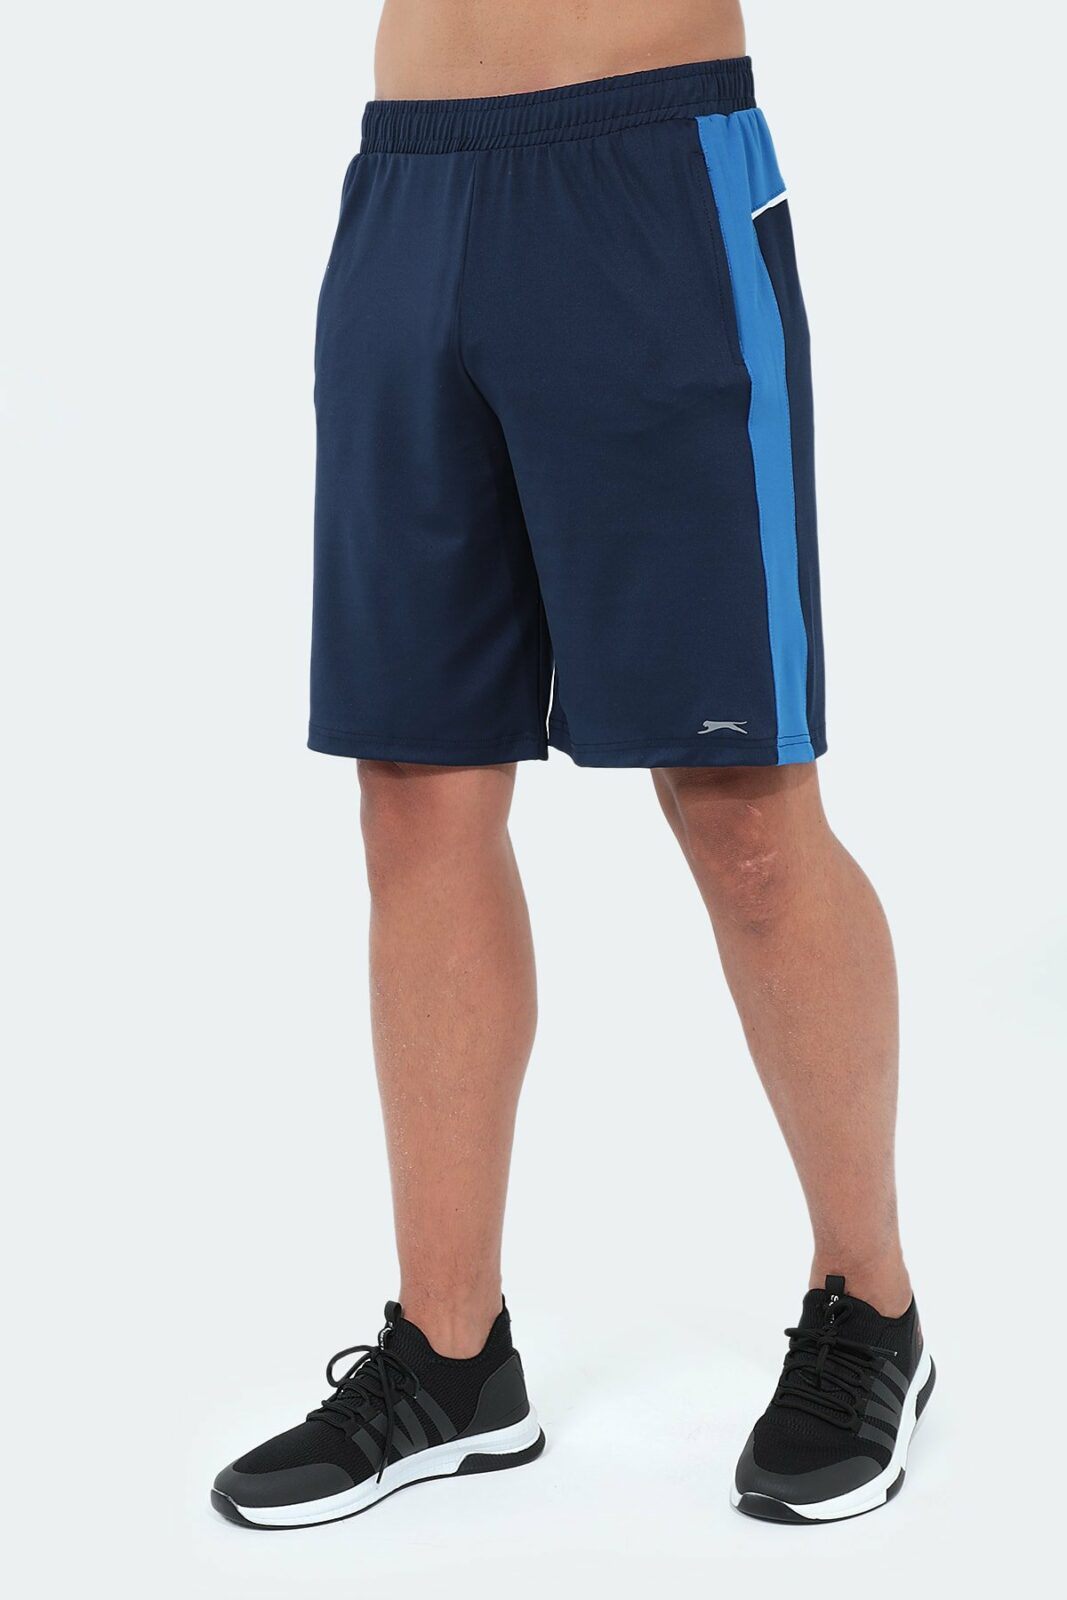 Slazenger Sports Shorts - Navy blue